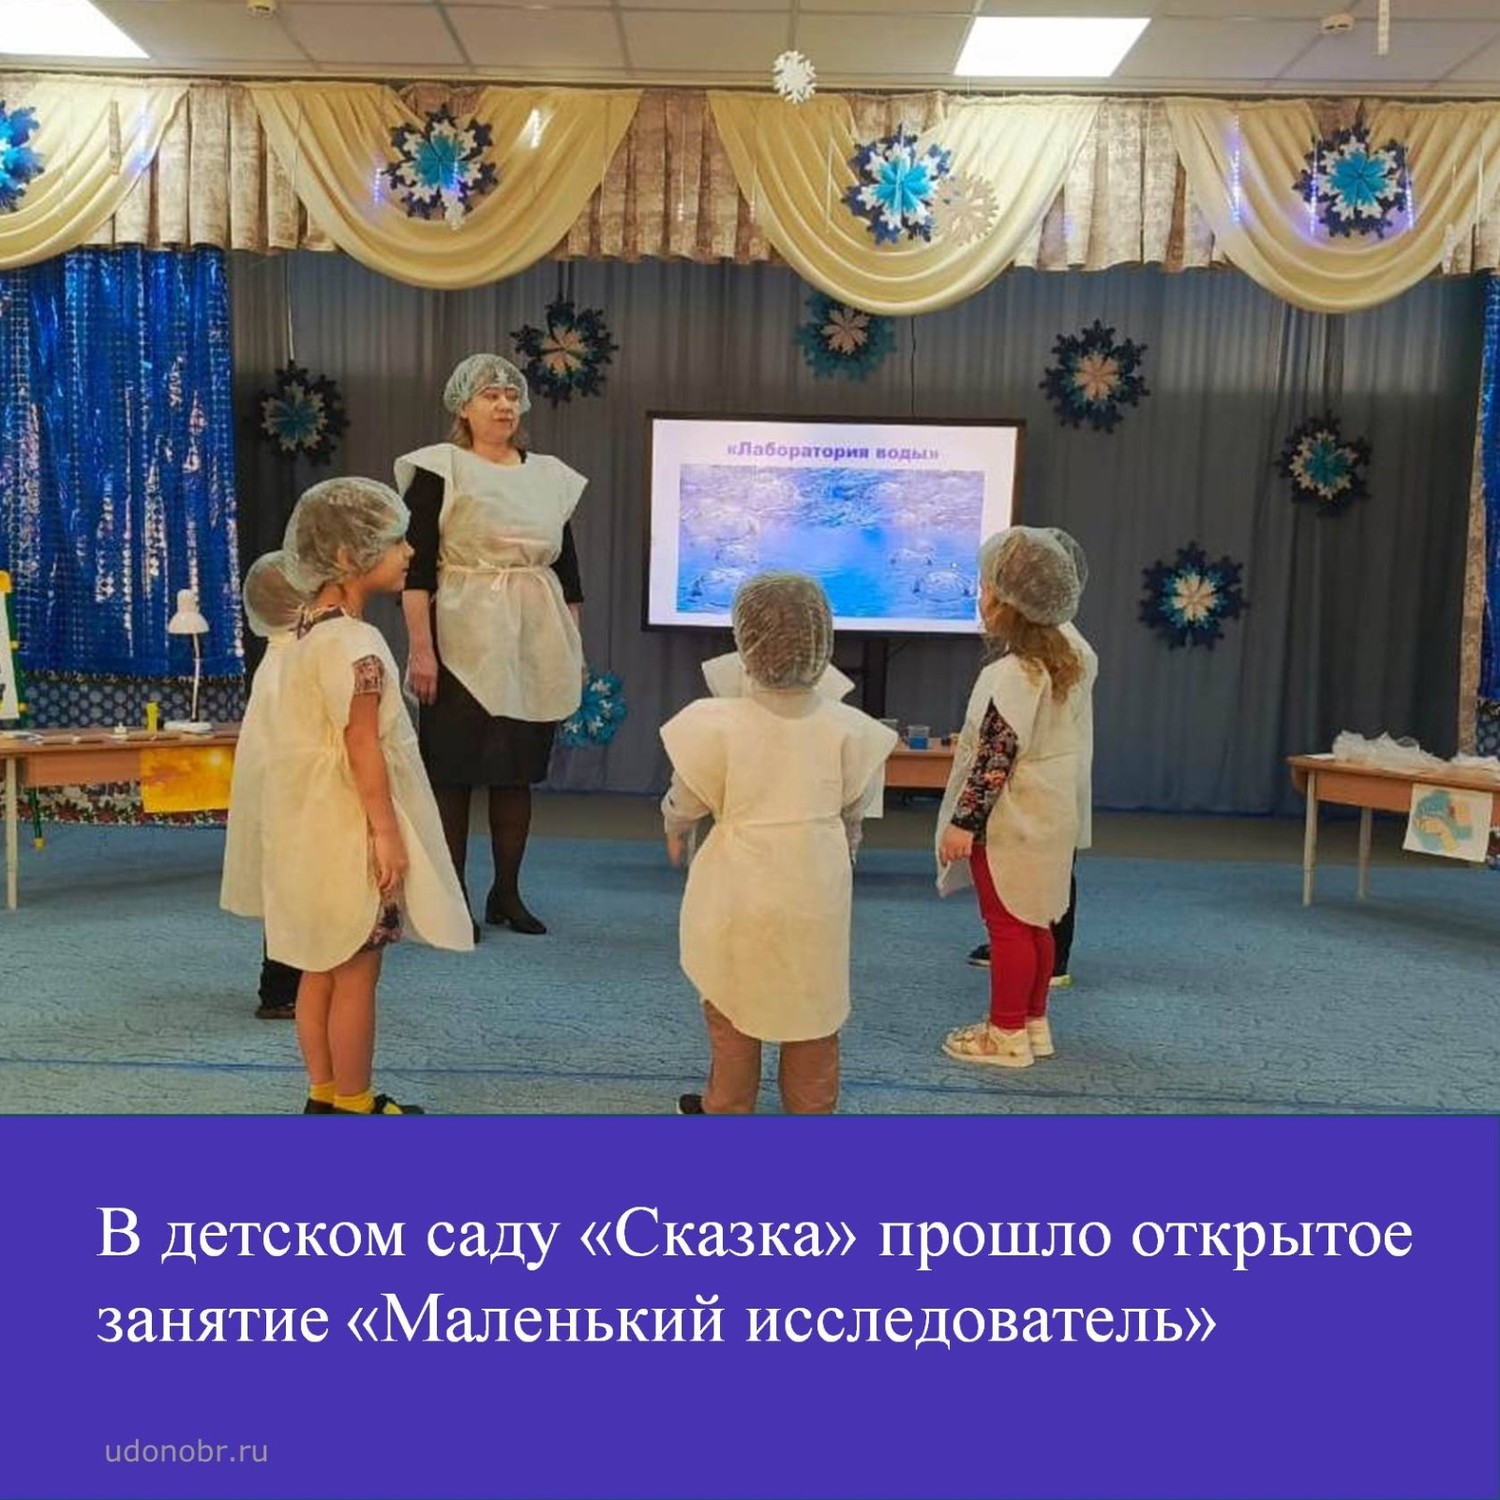 В детском саду «Сказка» прошло открытое занятие «Маленький исследователь»